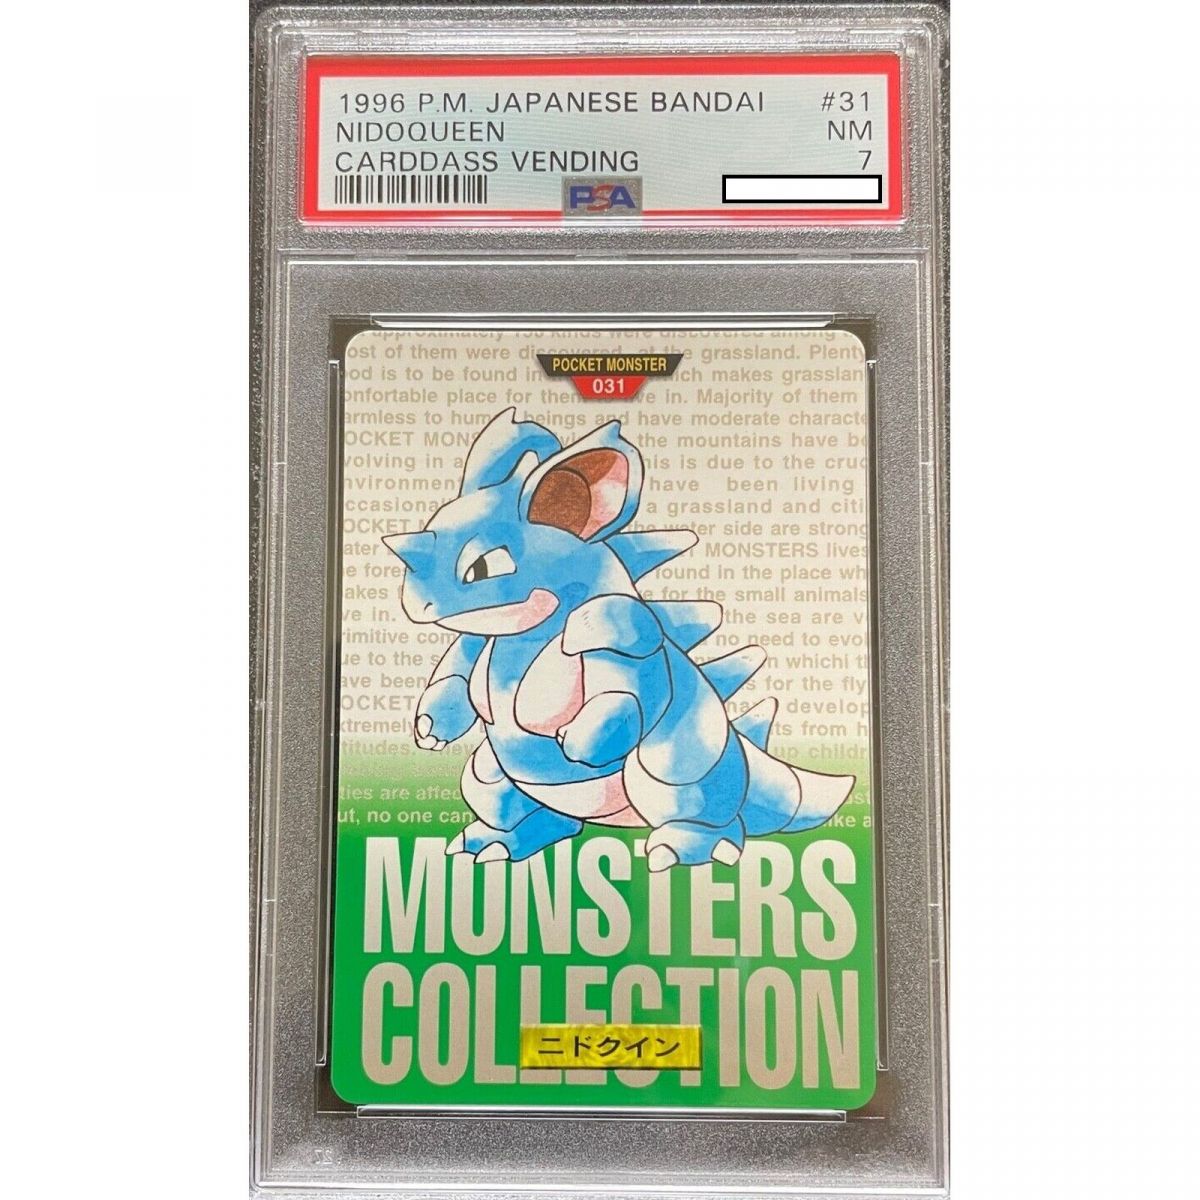 Pokémon - Graded Card - Nidoqueen 031 Carddass Vending 1996 Japanese [PSA 7 - Near Mint]